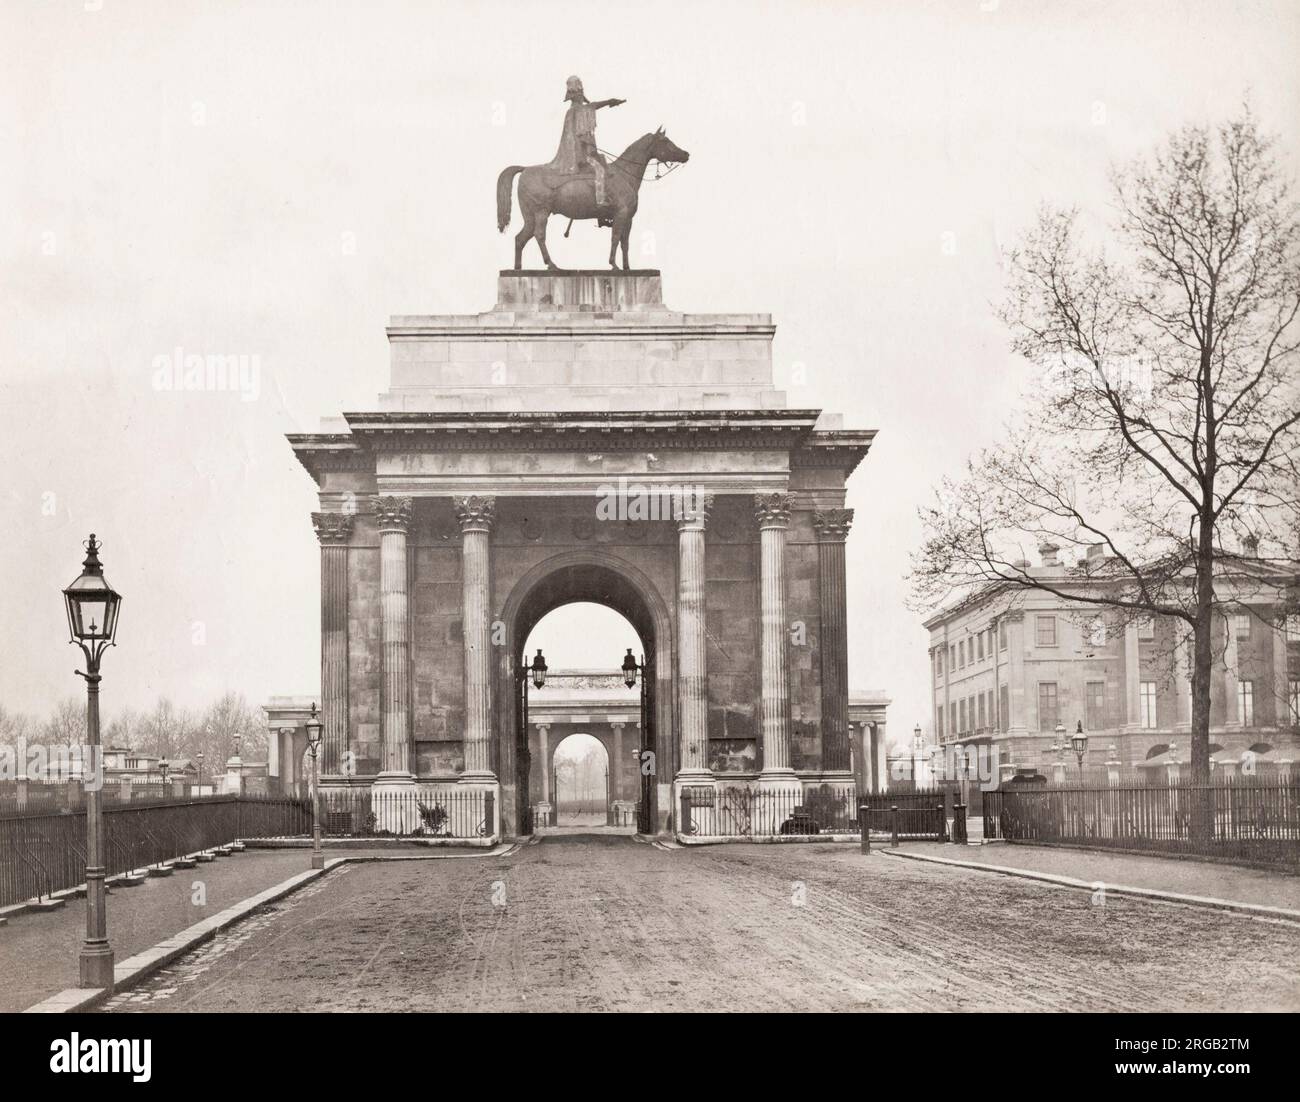 Vintage 19th century Photograph: Wellington Arch, auch bekannt als Constitution Arch oder als Green Park Arch, ist ein Triumphbogen der Klasse I von Decimus Burton, der ein Herzstück des Hyde Park Corner im Zentrum von London bildet, zwischen den Ecken des Hyde Park und Green Park Stockfoto